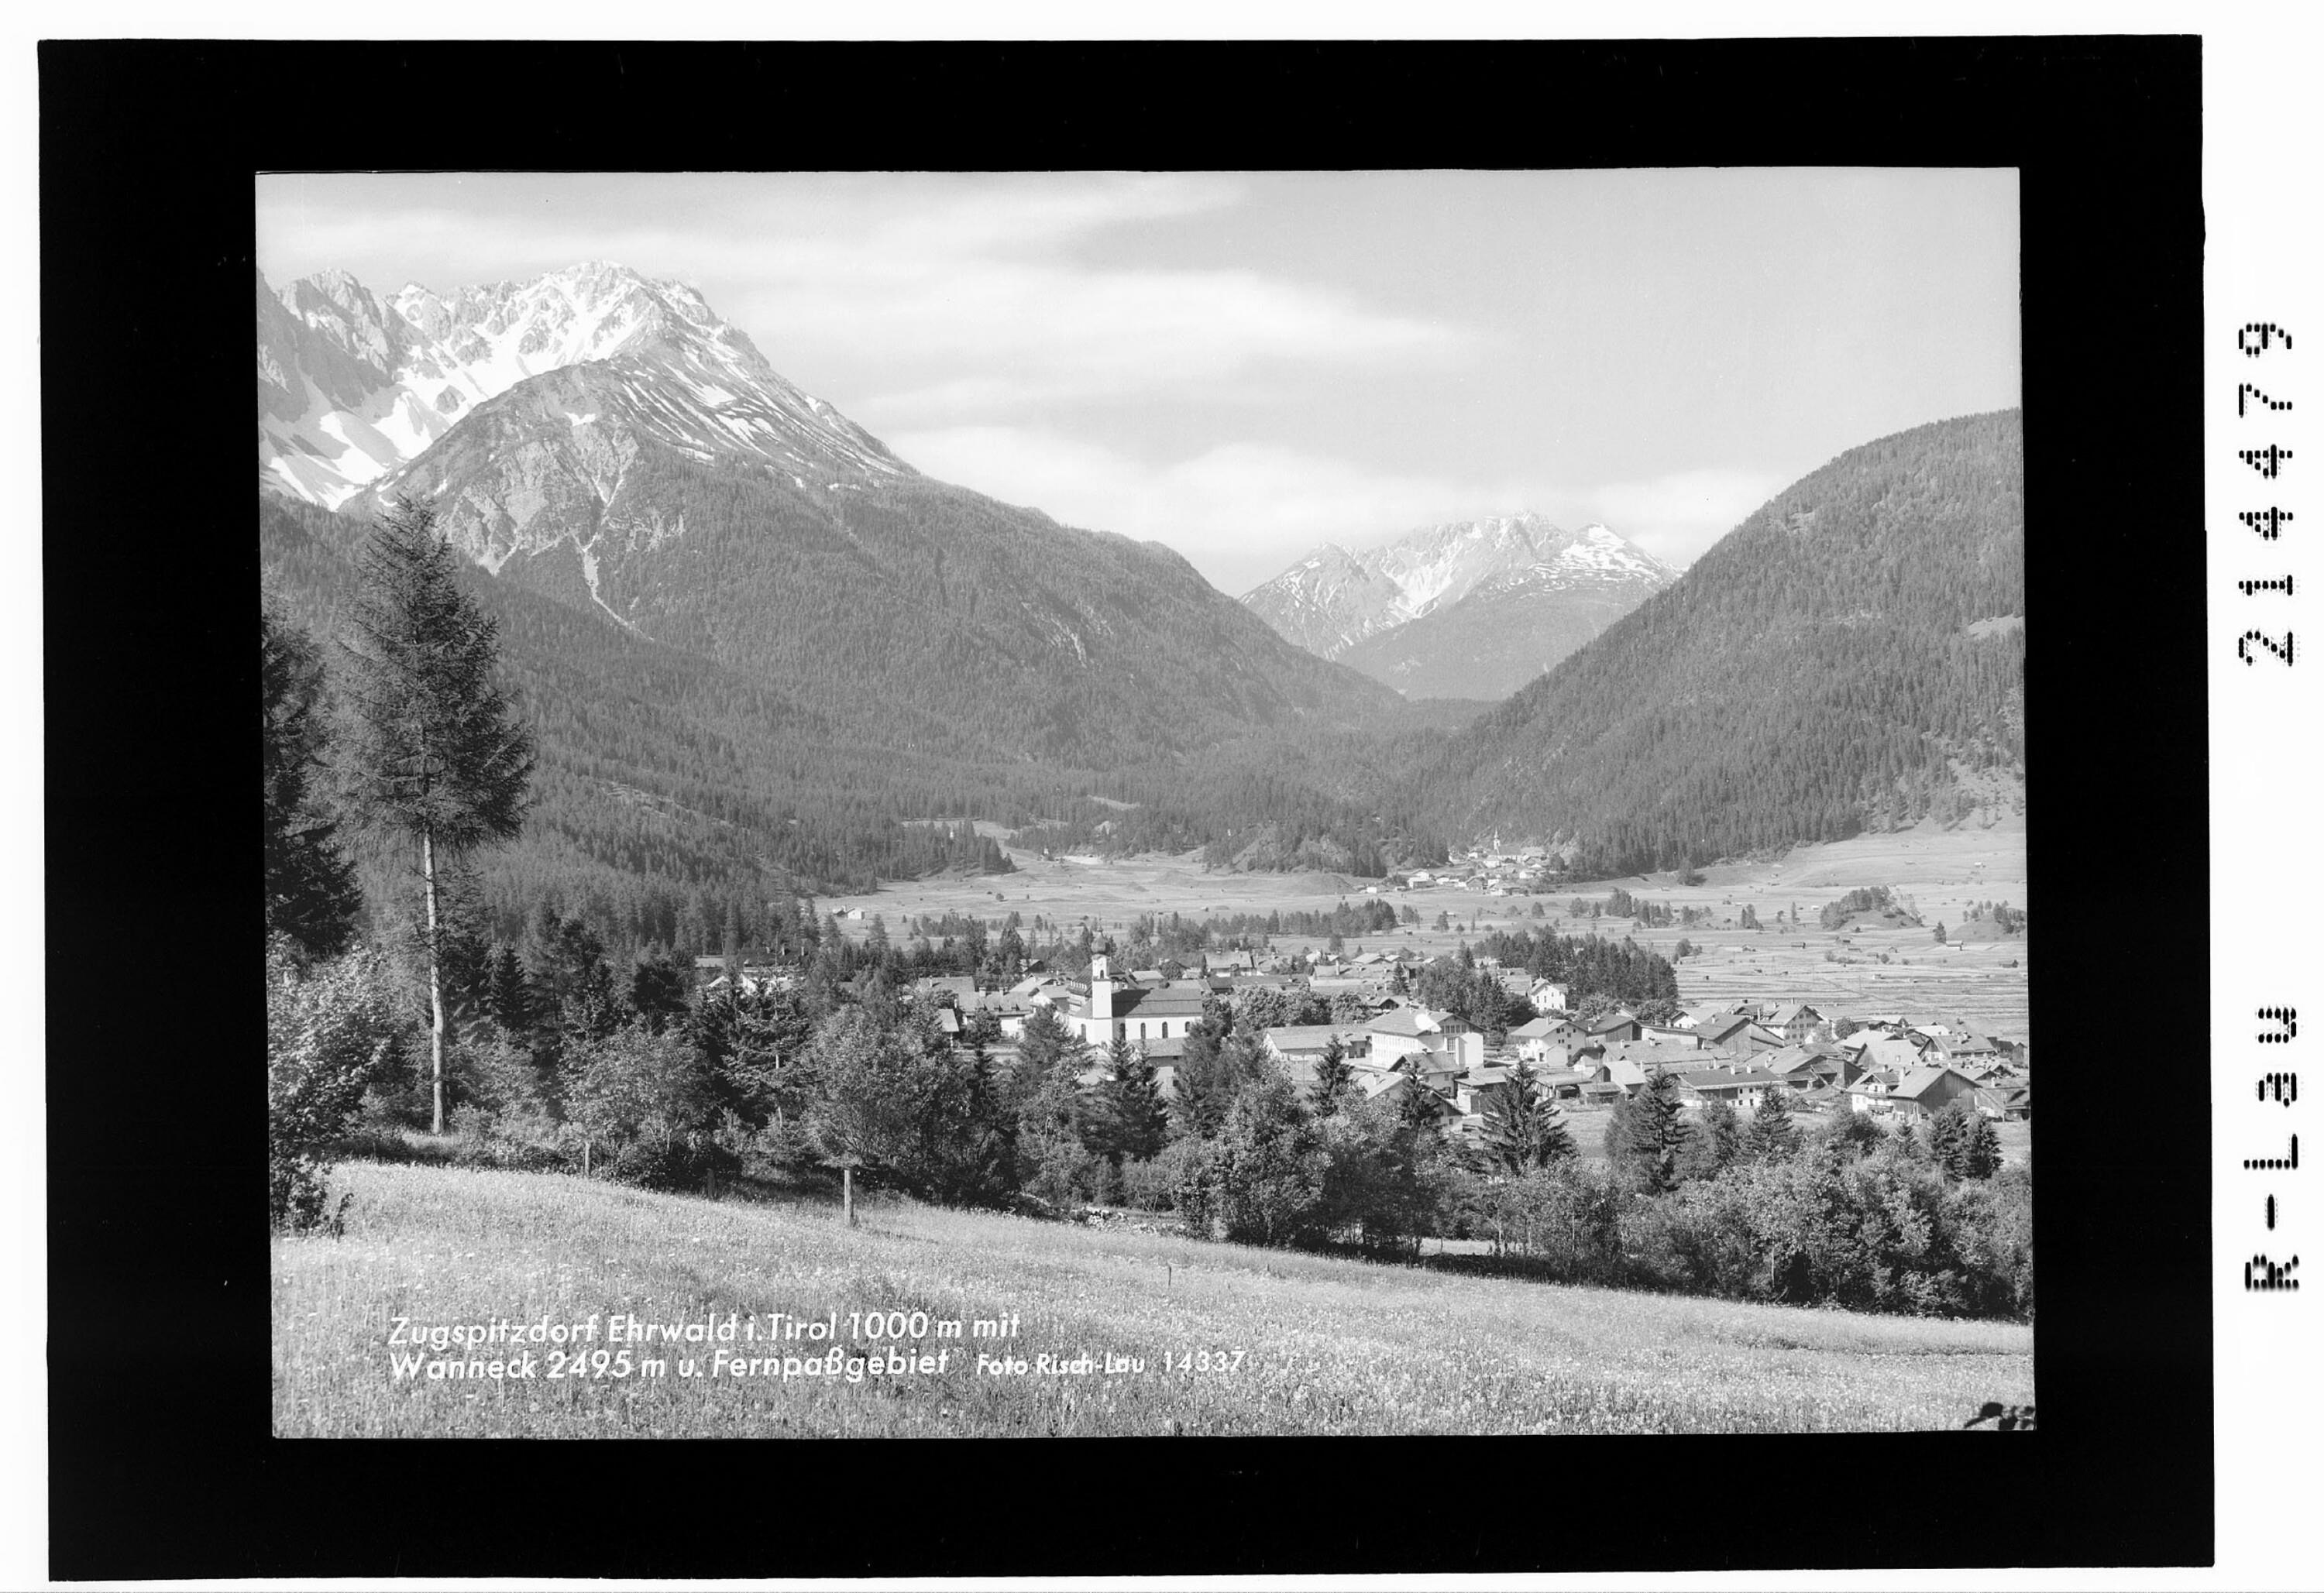 Zugspitzdorf Ehrwald in Tirol 1000 m mit Wanneck 2495 m und Fernpassgebiet></div>


    <hr>
    <div class=